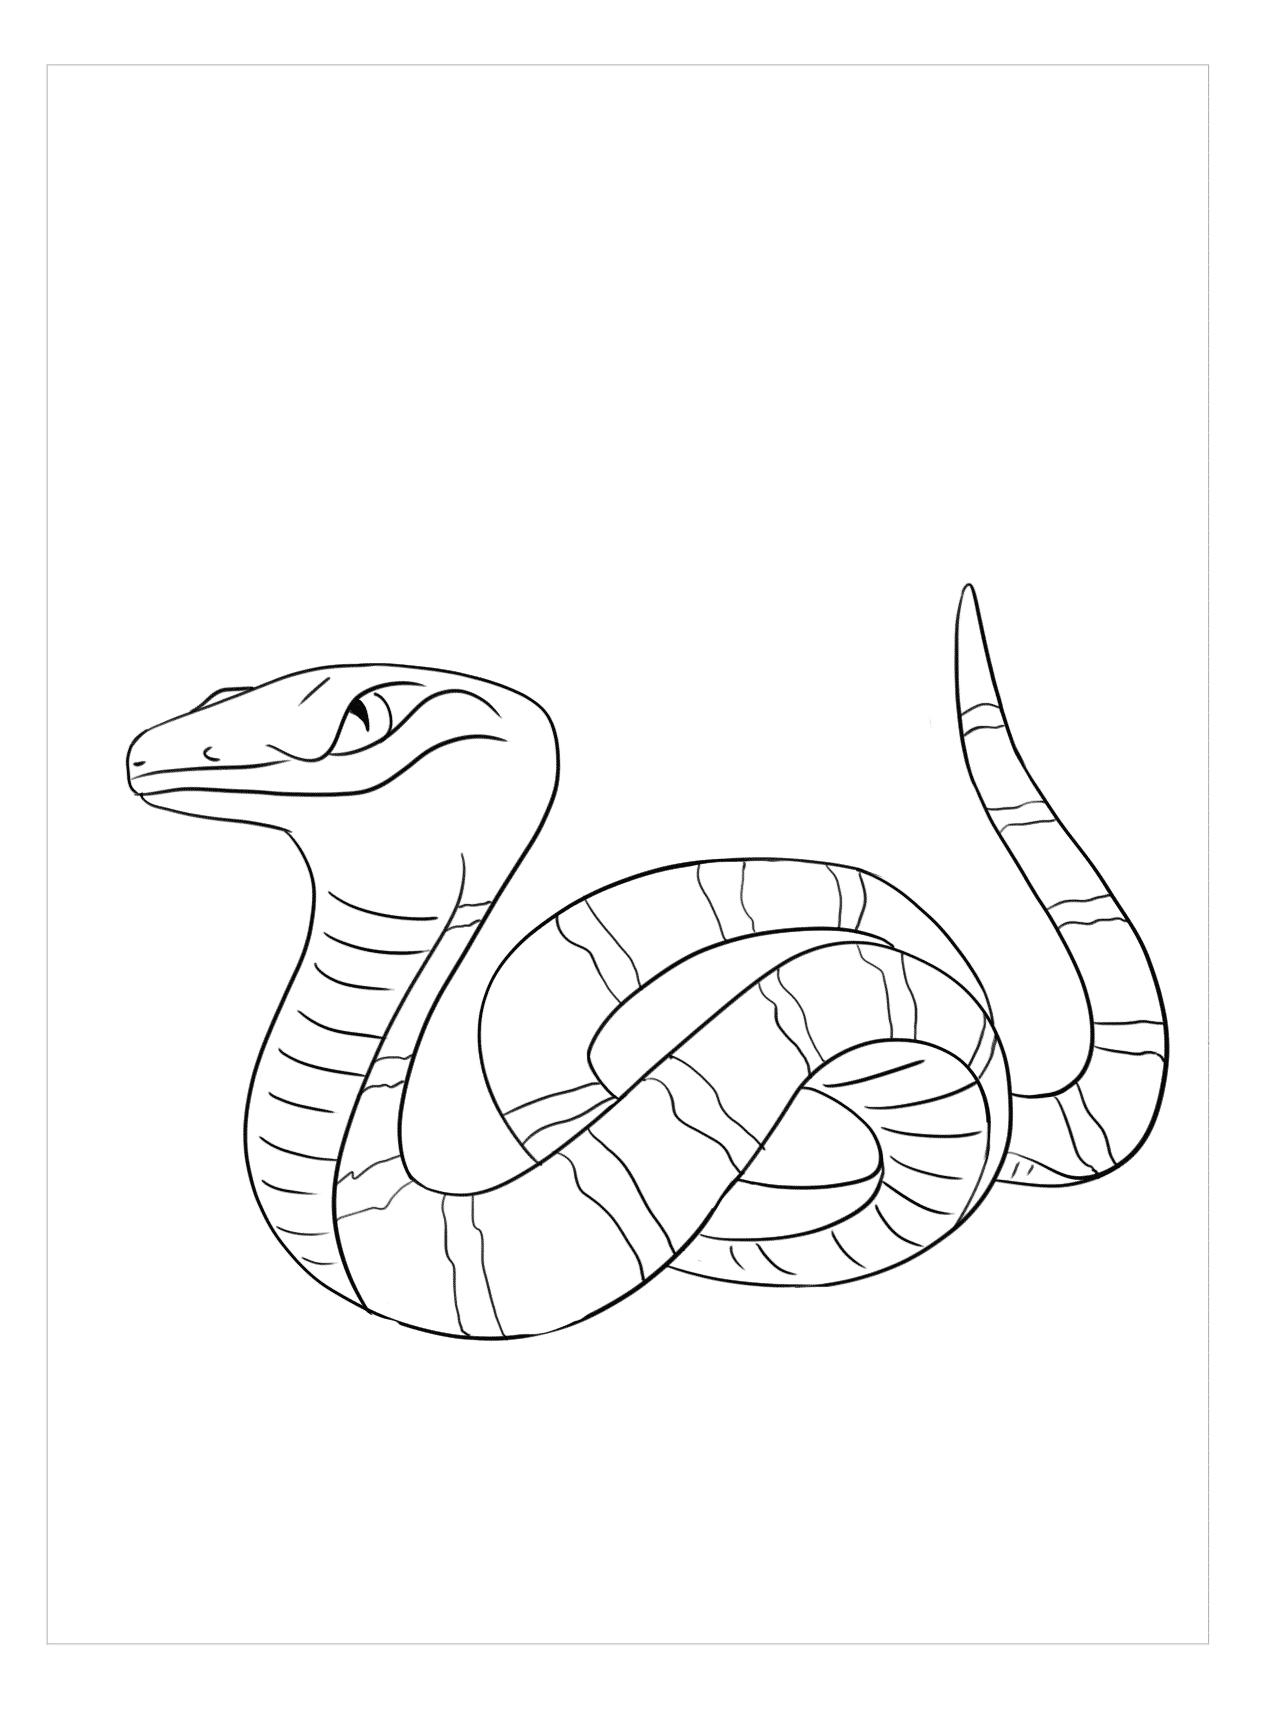 Hình vẽ con rắn luôn mang đến sự độc đáo và bí ẩn. Hãy khám phá màn hình của bạn với bức tranh rắn tuyệt đẹp này!